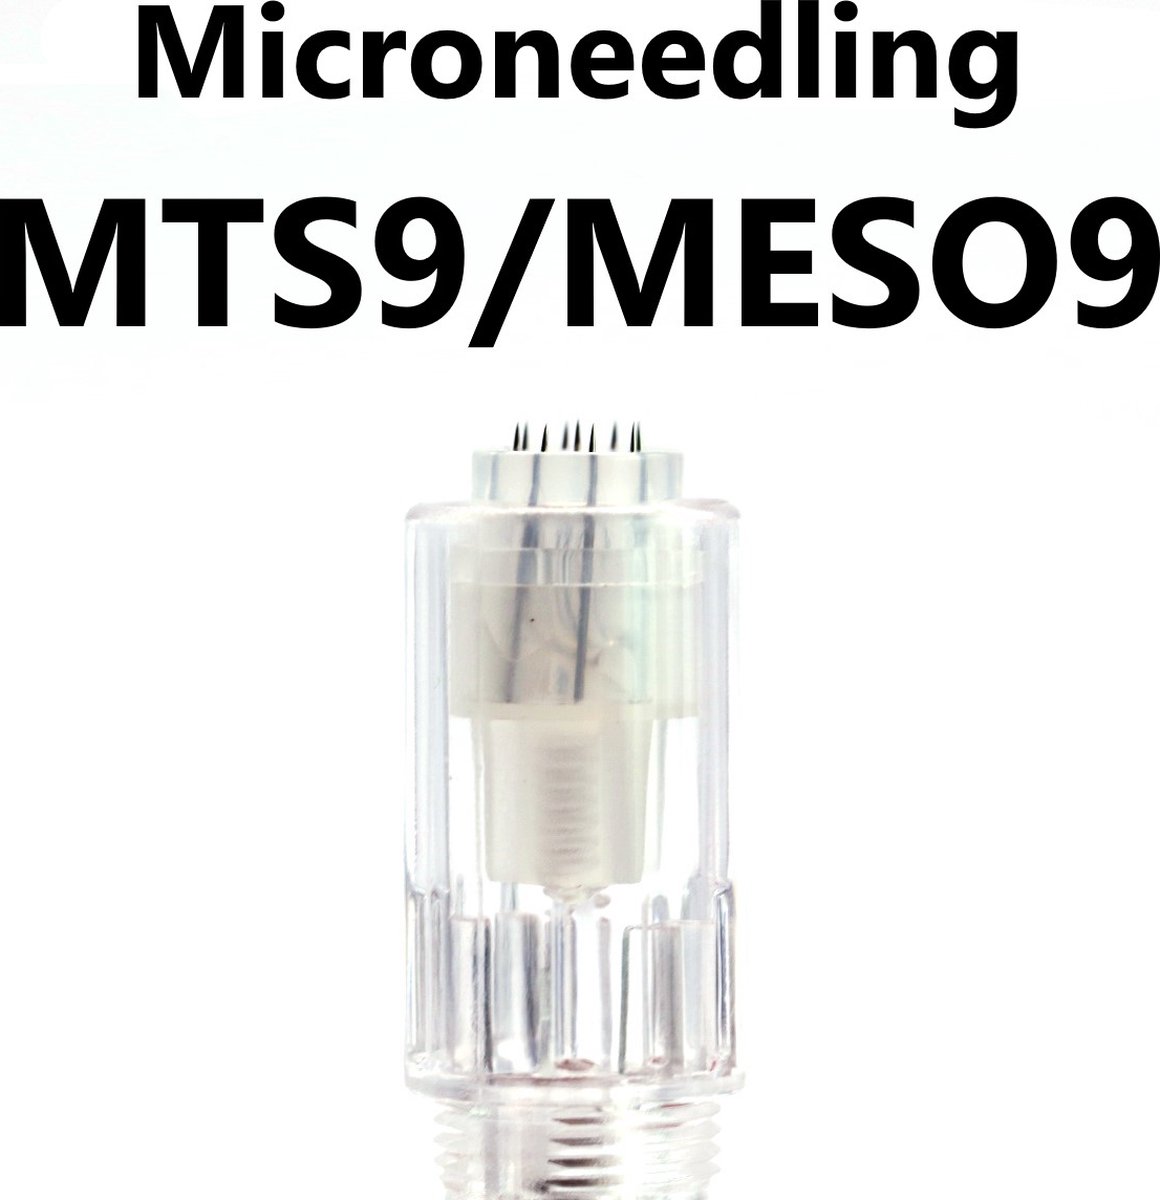 Mastor - PMU Naalden – Meso 9/ Mts 9 – 5 Stuks - Ook verkrijgbaar in R1, R3, R5, F5, V9, V12, meso9 (mts9), meso12(mts12)